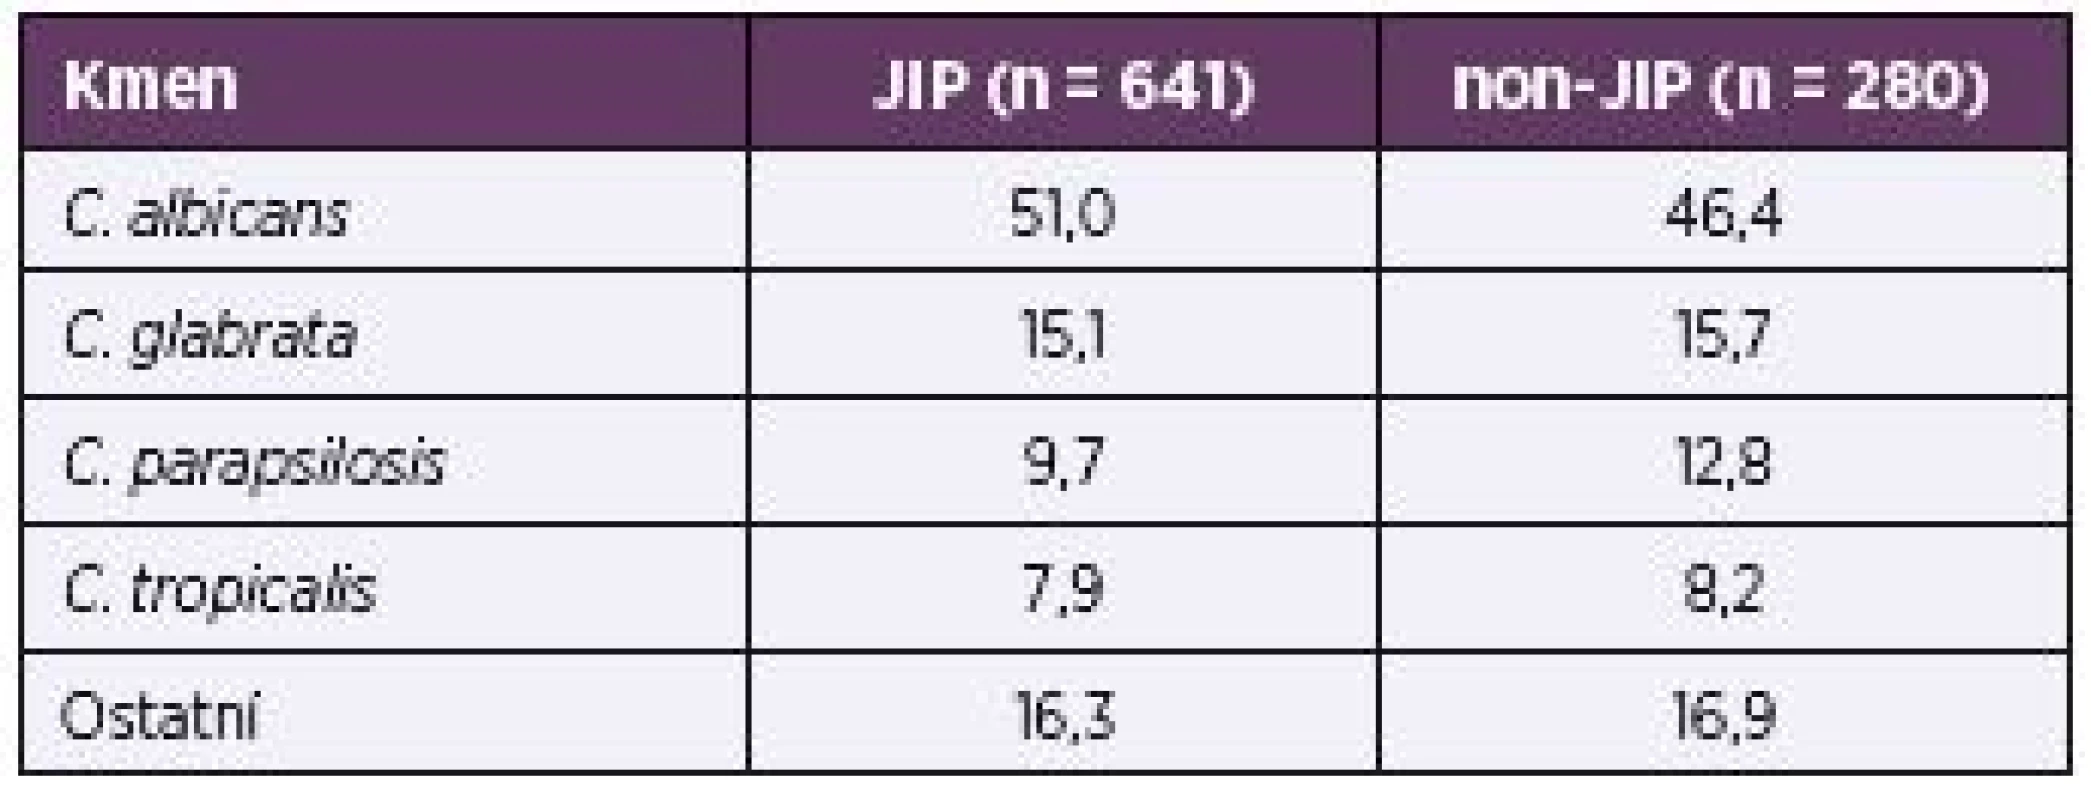 Rozložení nejčastěji izolovaných kmenů na JIP a non-JIP v procentech
Table 4. Distribution of the most common ICU and non-ICU strains in percentages